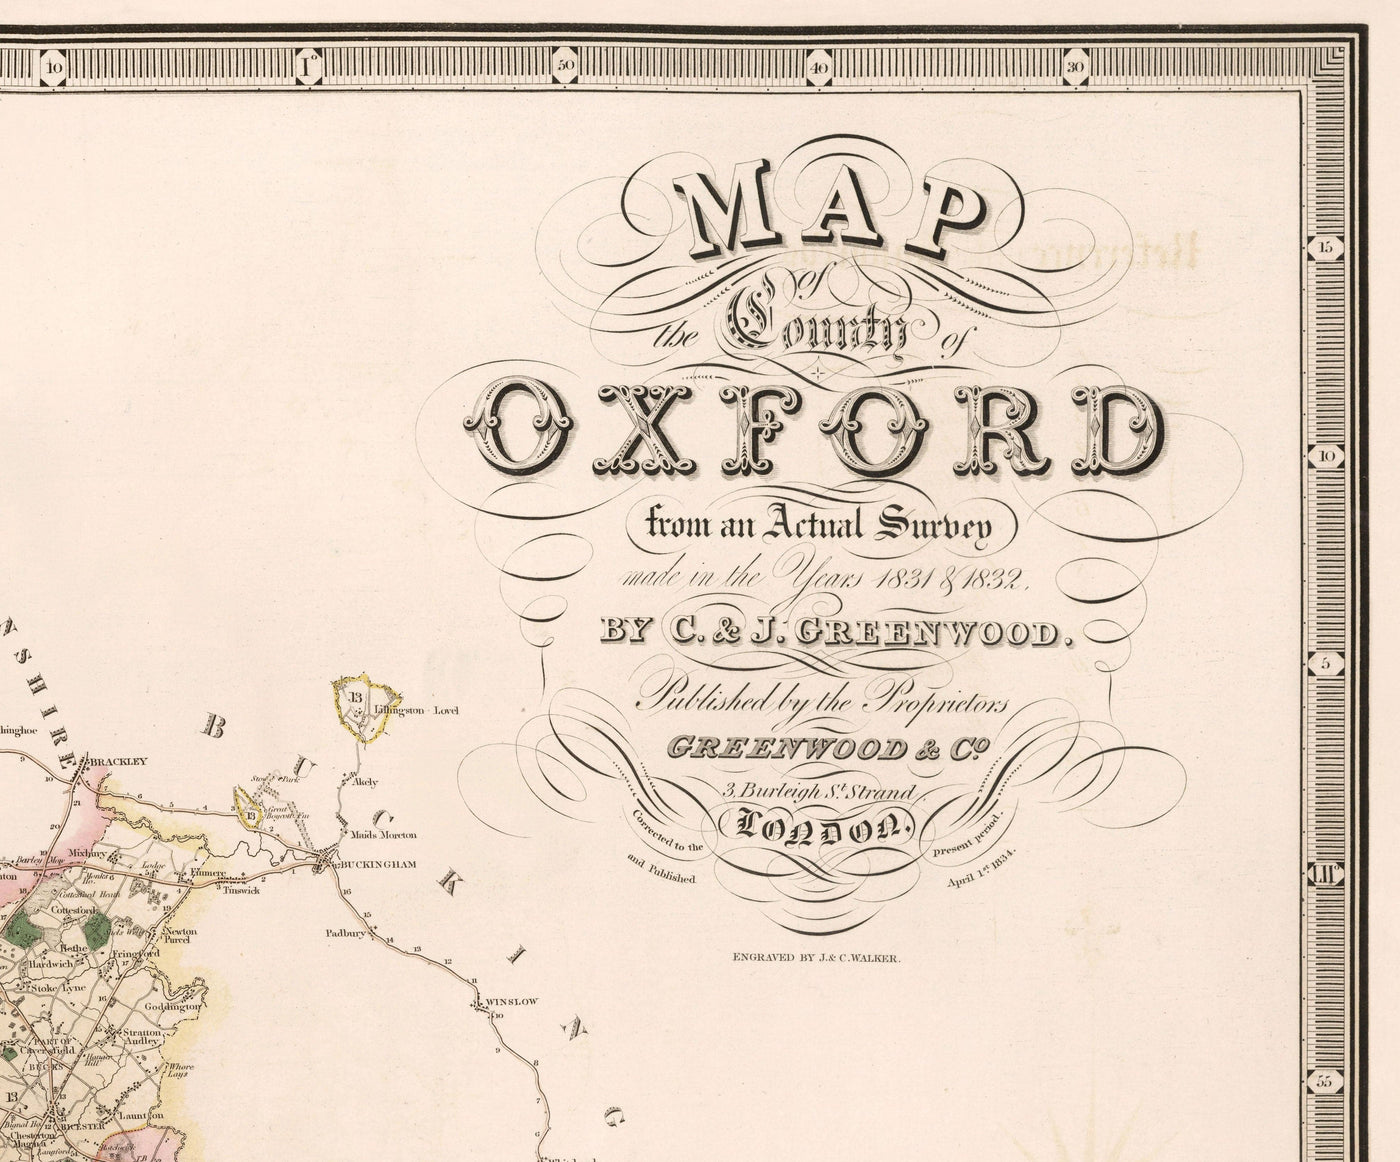 Ancienne carte d'Oxfordshire, 1829 par Greenwood - Oxford, Banbury, Abingdon, Bicester, Université